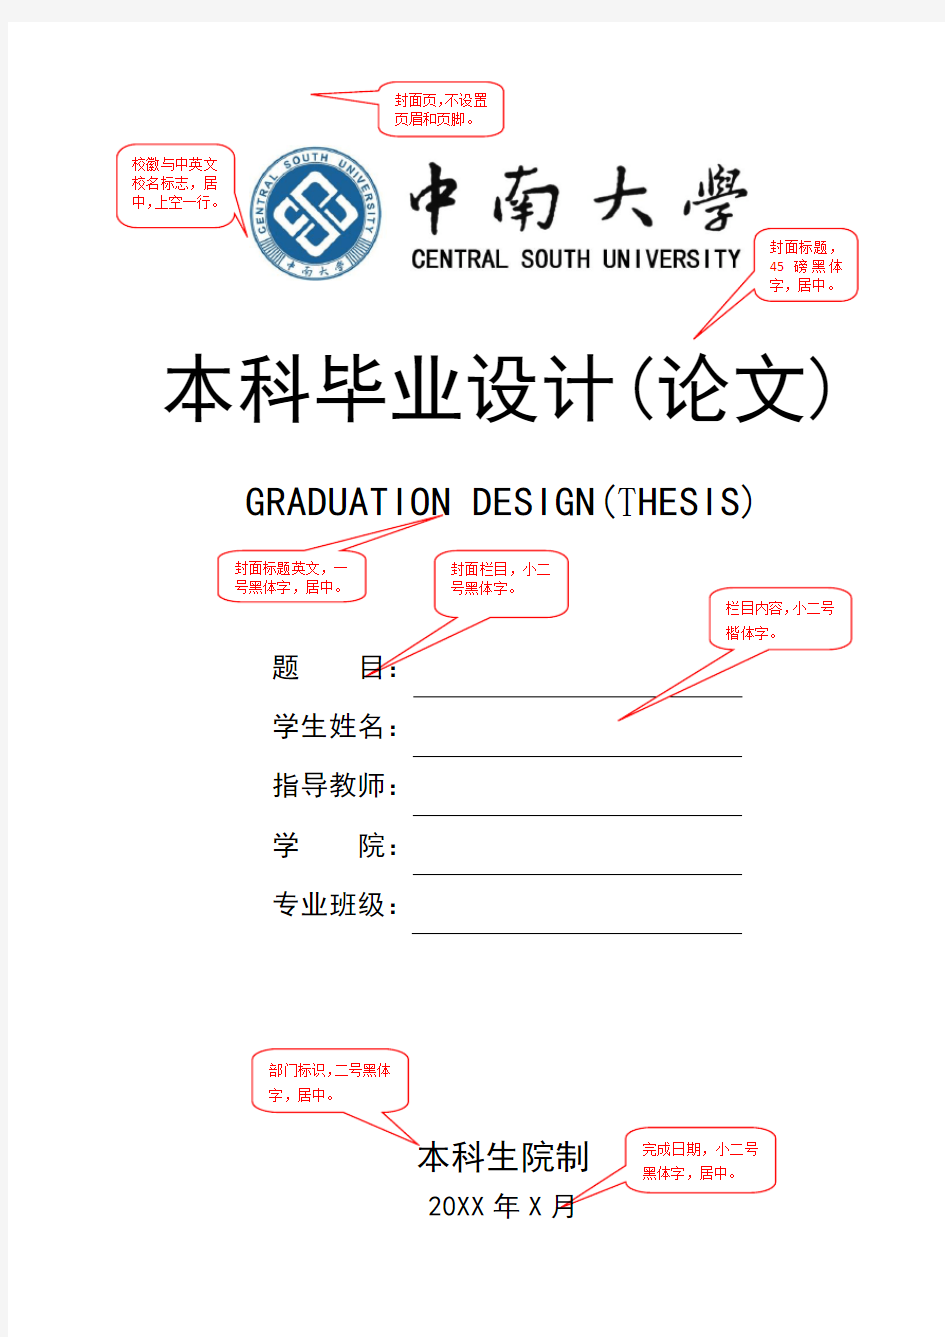 中南大学本科毕业设计(论文)格式要求